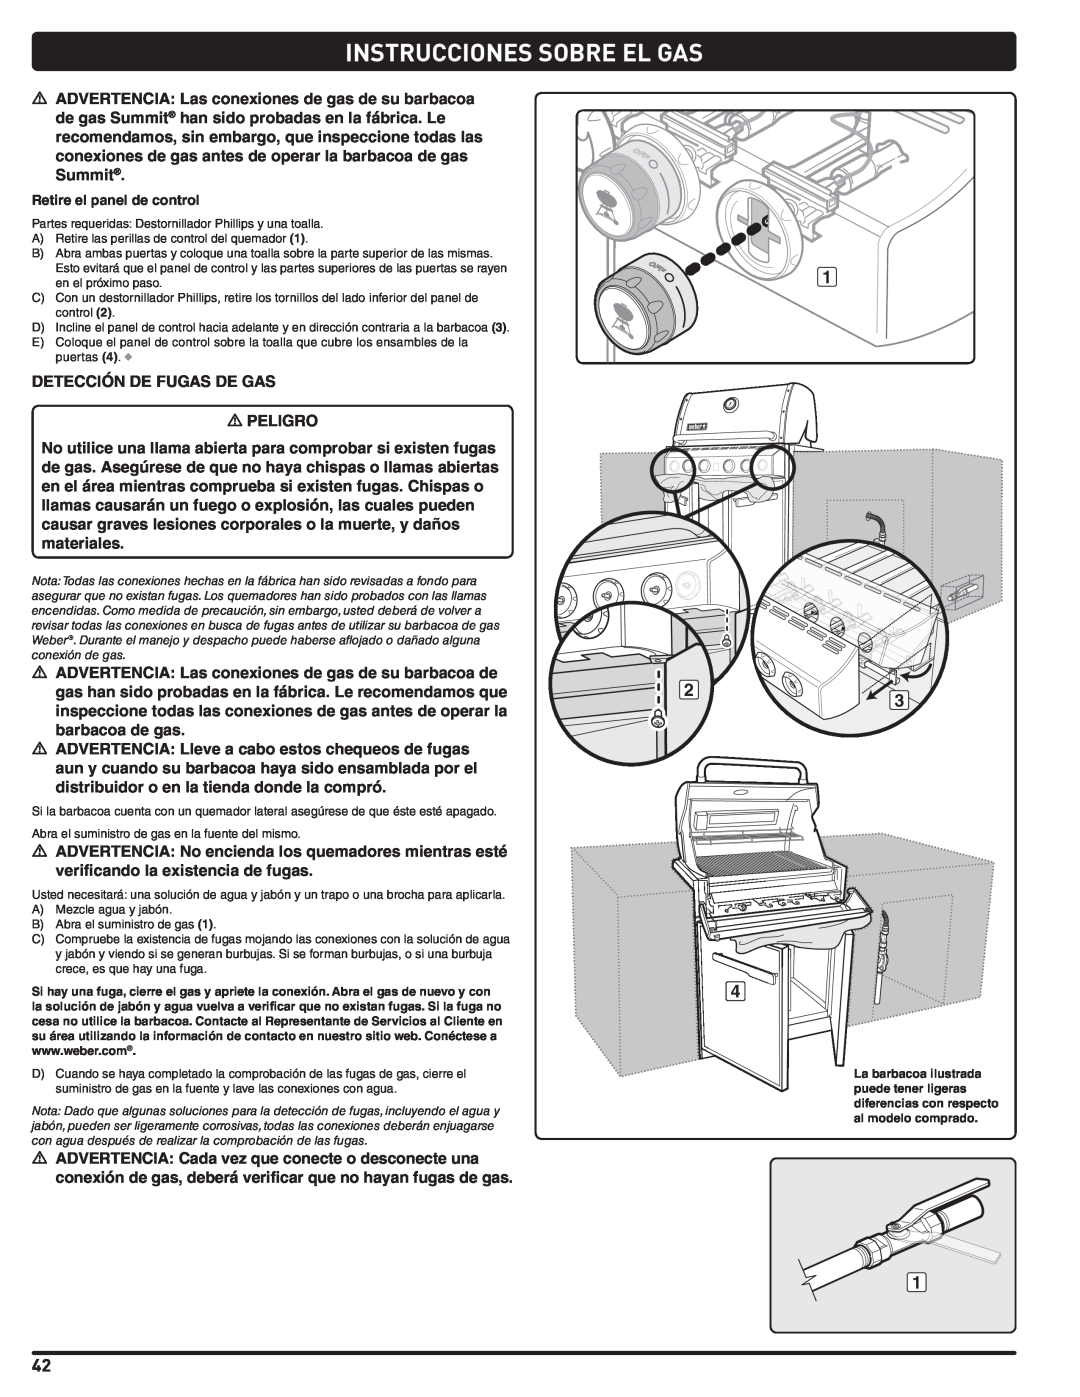 Weber 56576 manual Instrucciones Sobre El Gas, DETECCIÓN DE FUGAS DE GAS m PELIGRO 